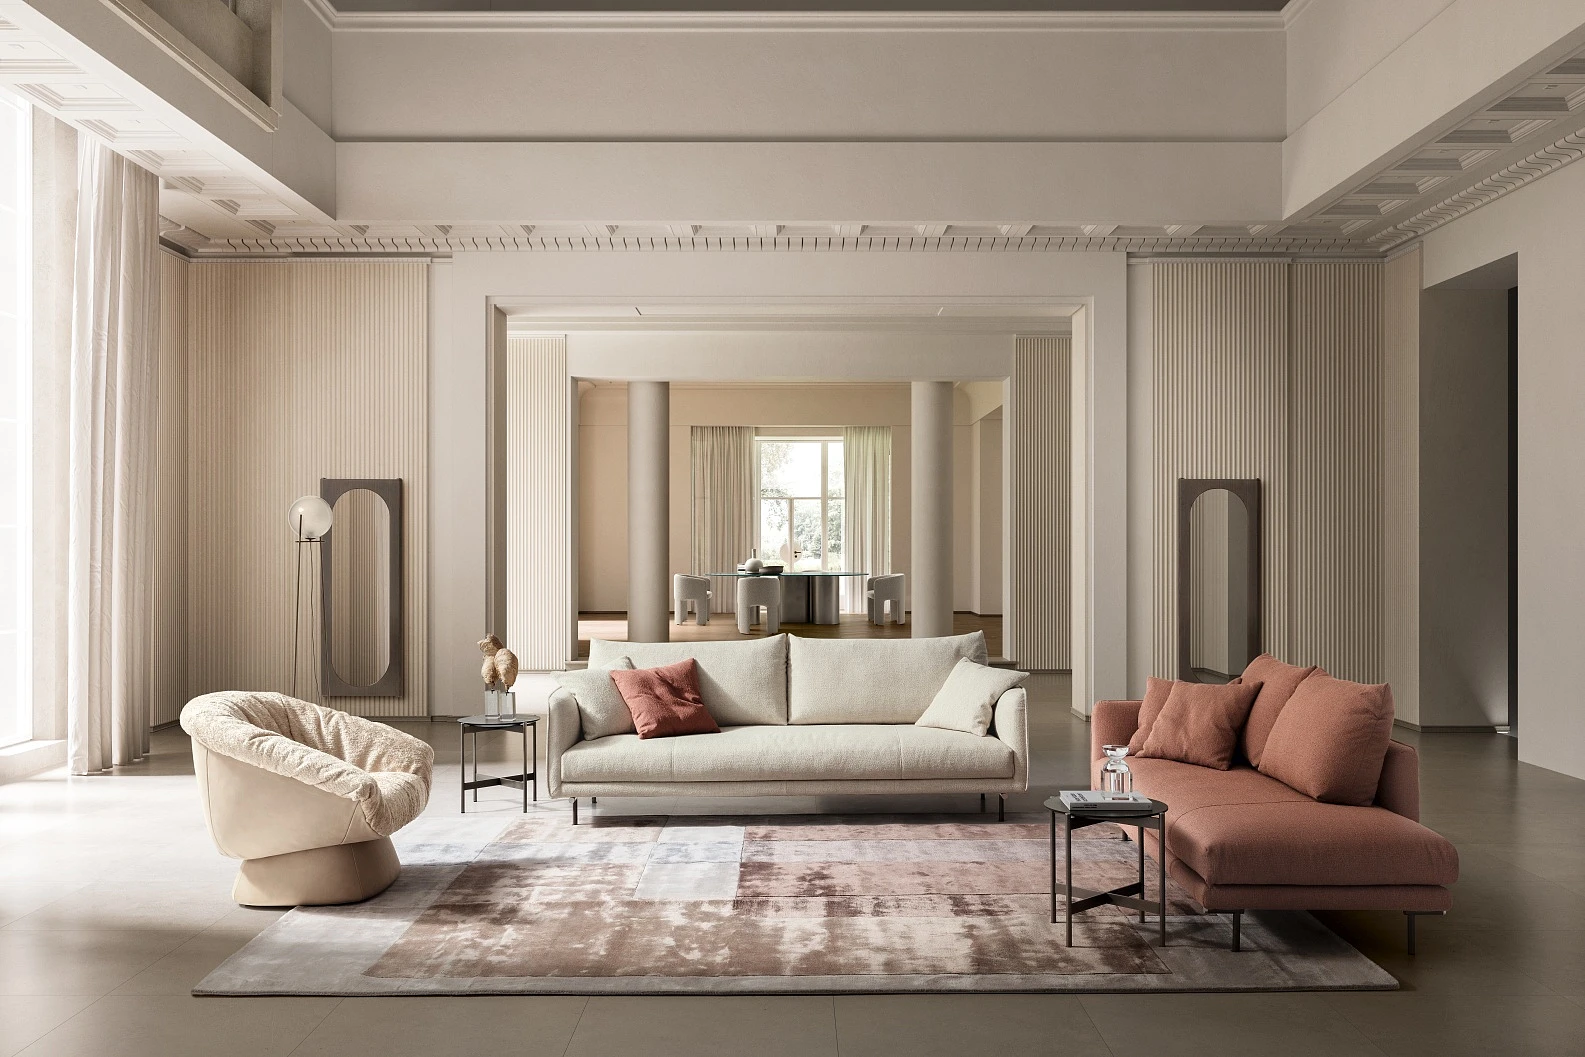 Salon w neutralnej przestrzeni pełnej stonowanych kolorów z dwiema sofami oraz fotelem w beżowych kolorach. 